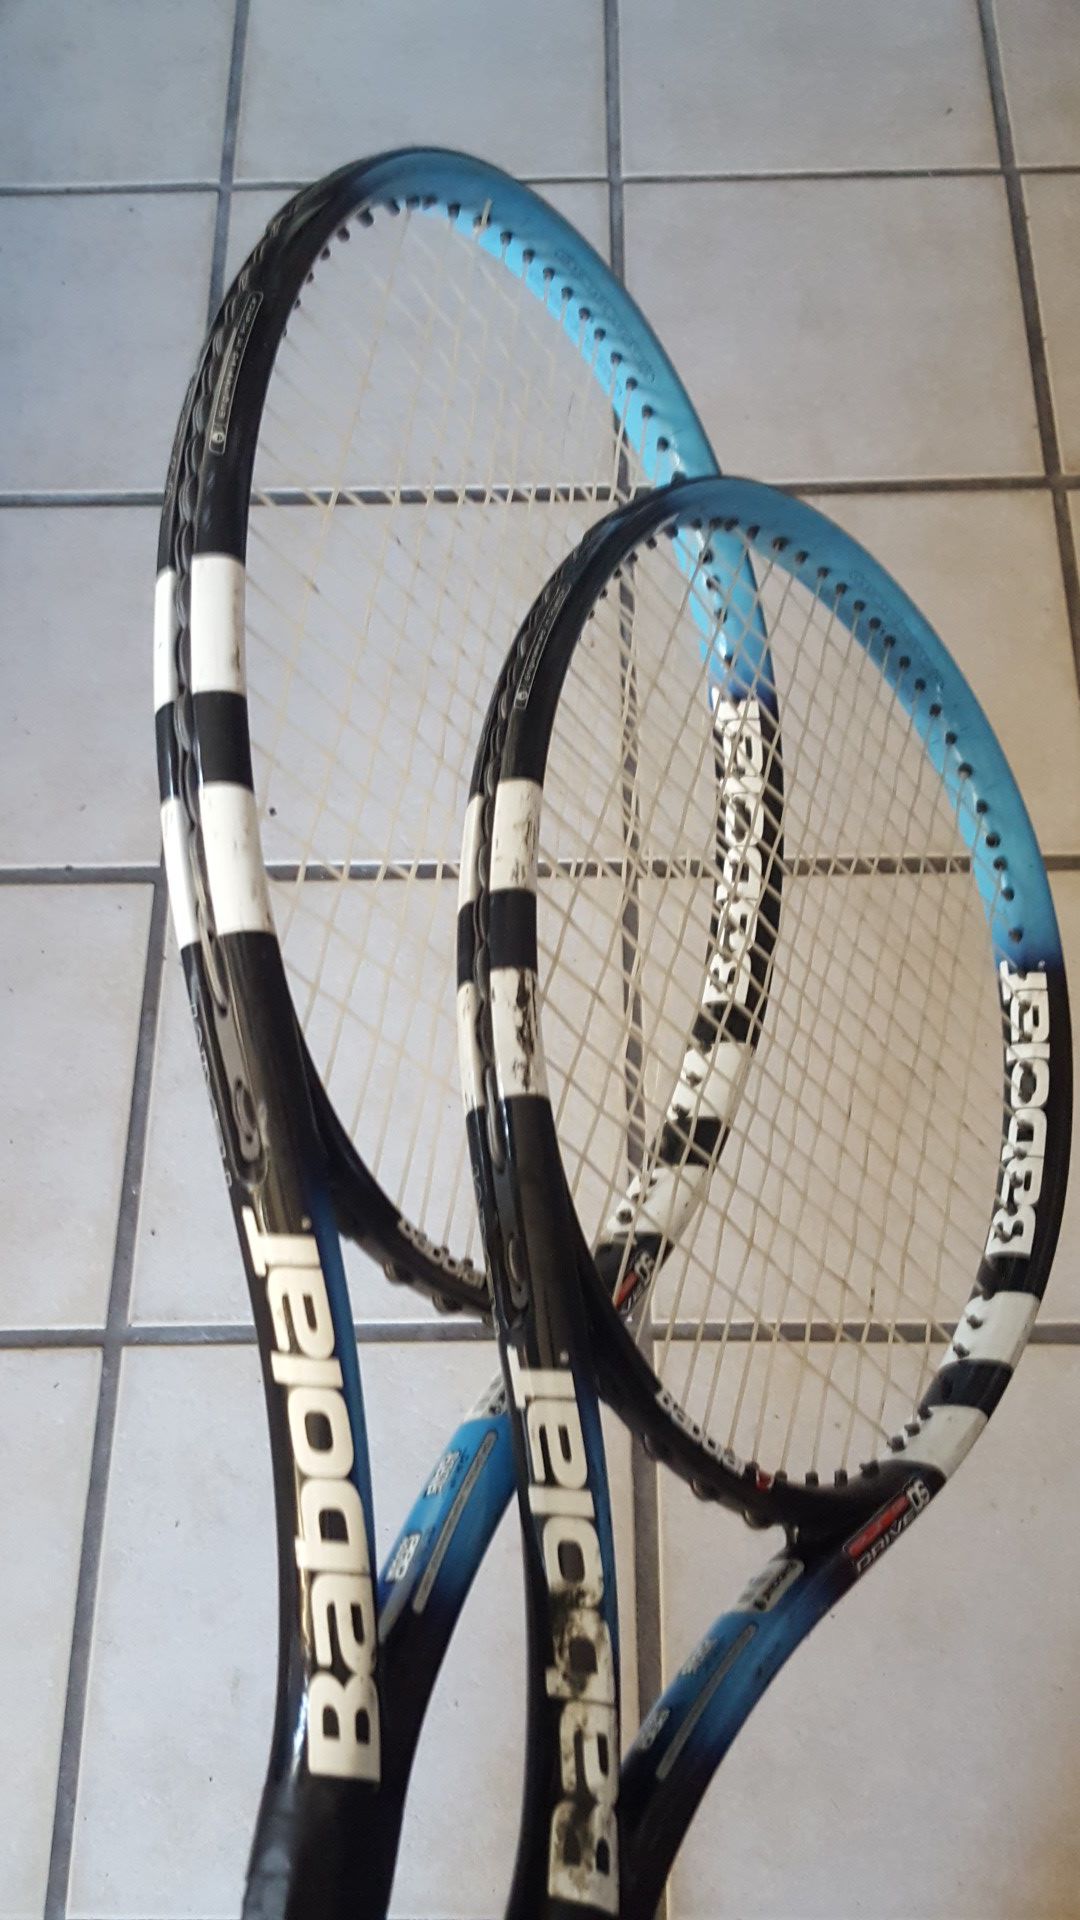 2 Babolat tennis rackets